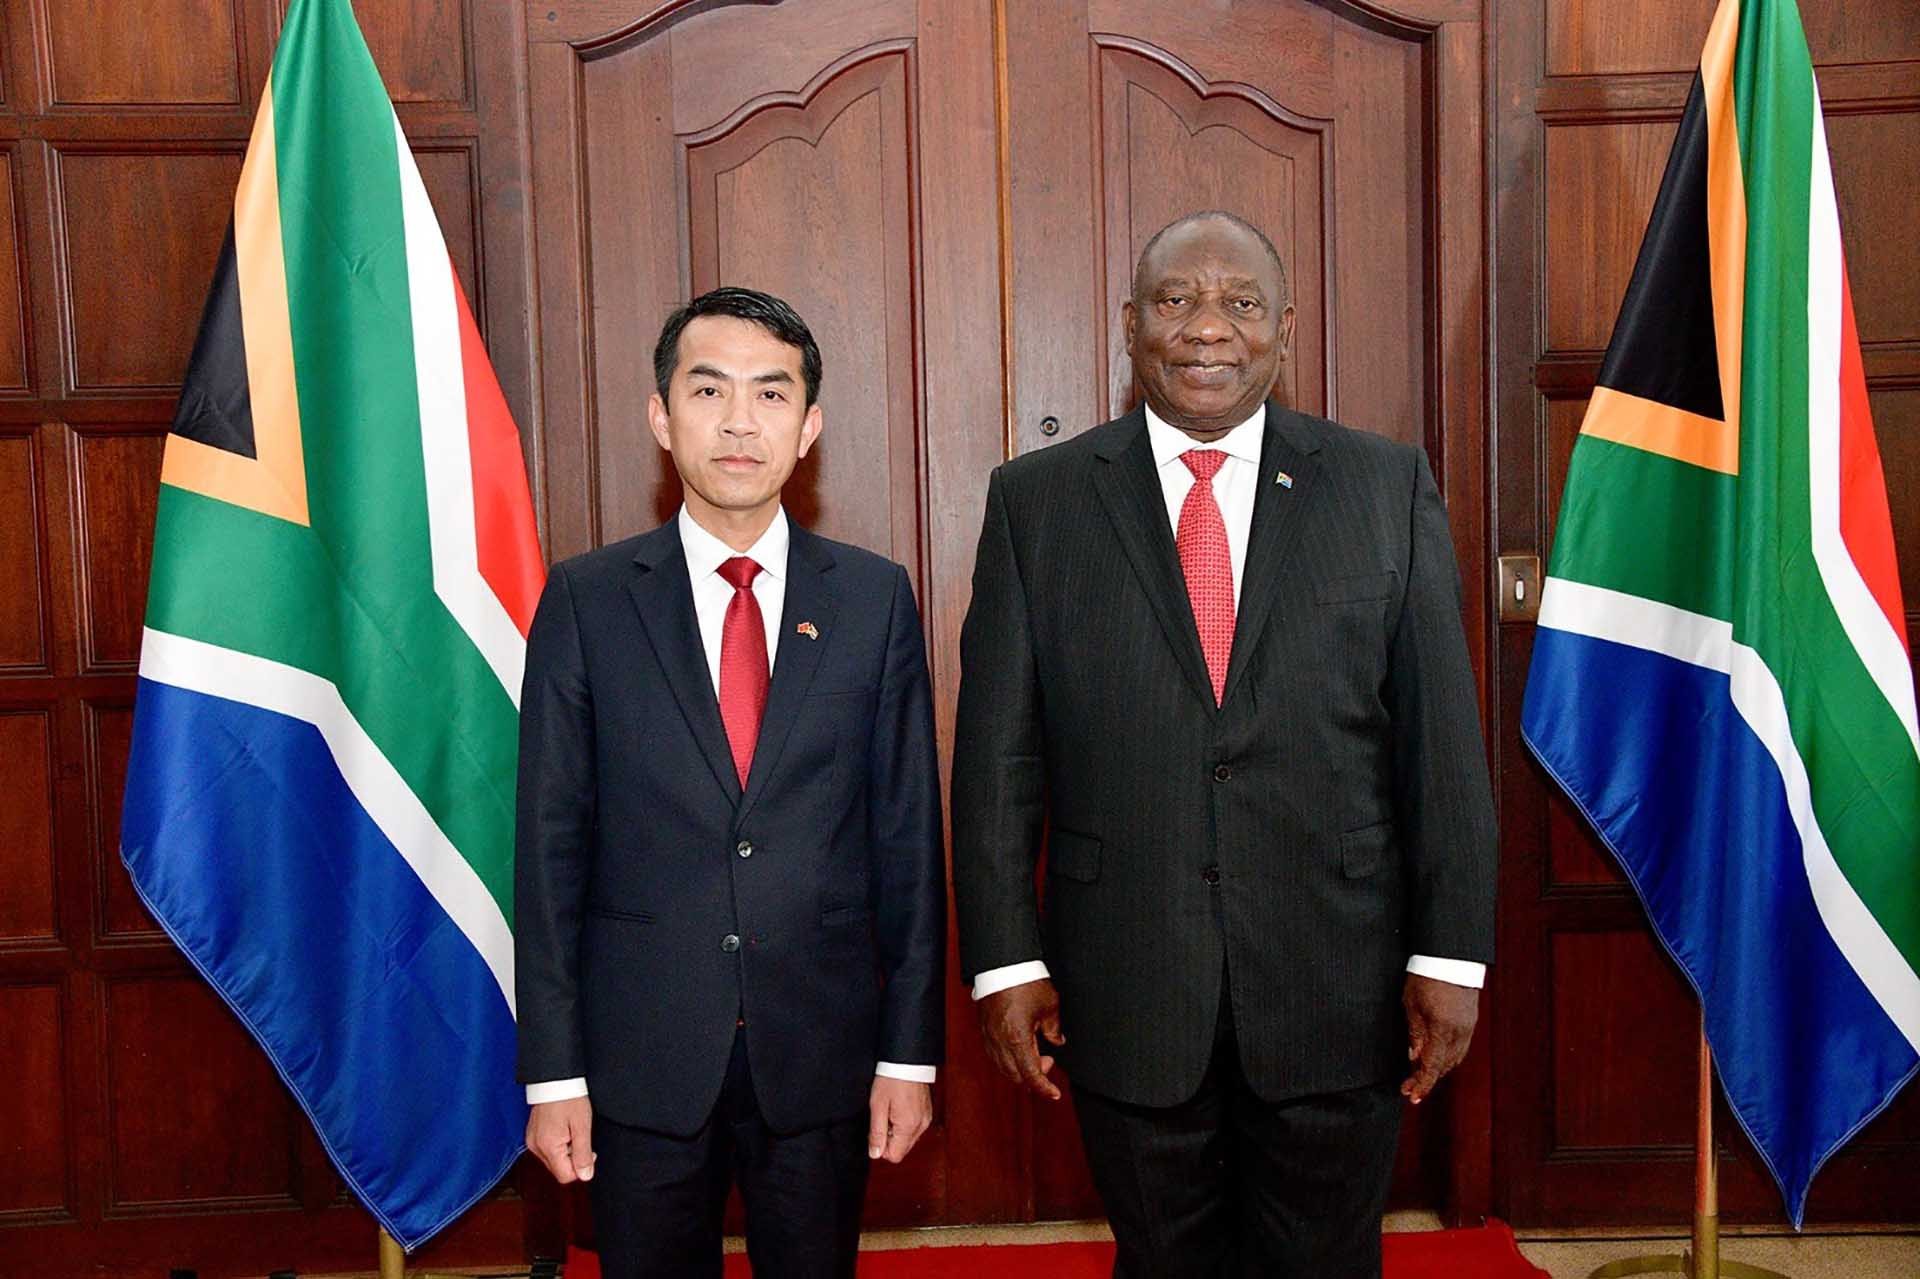 Đại sứ Hoàng Sỹ Cường trình Thư ủy nhiệm của Chủ tịch nước Võ Văn Thưởng lên Tổng thống Nam Phi Cyril Ramaphosa.